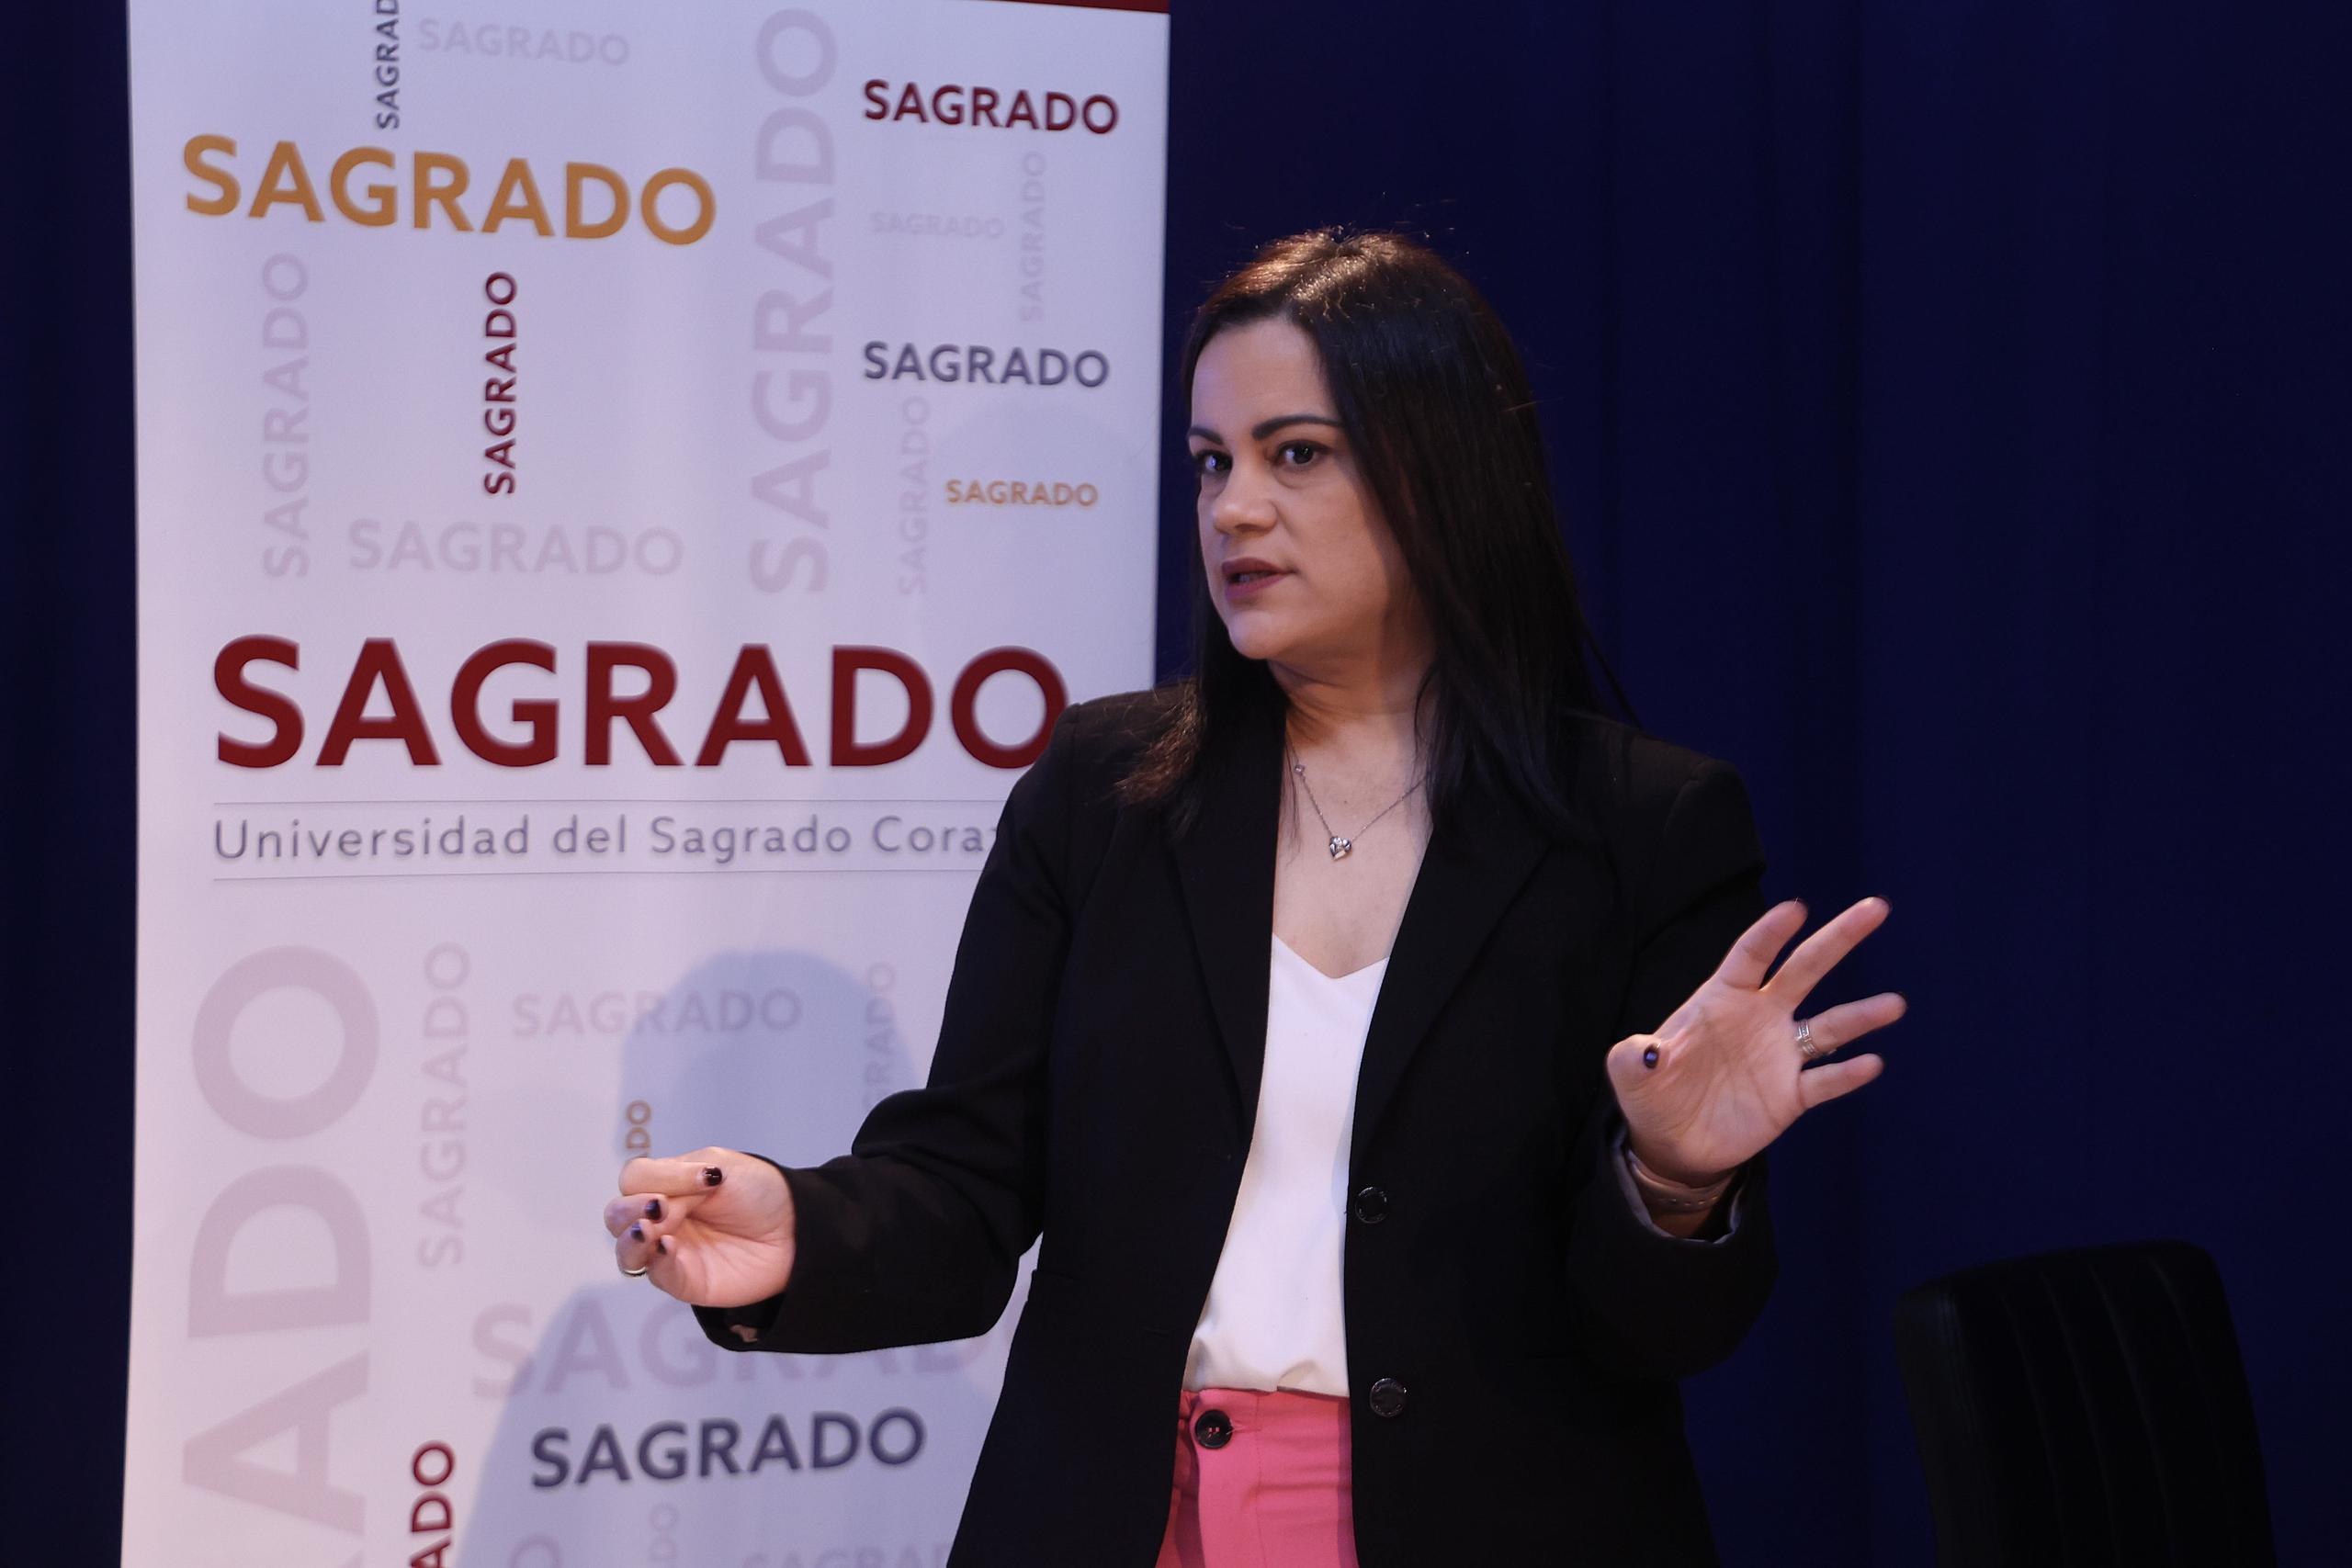 "Nuestras estaciones siguen creciendo y lo que buscamos es poderlos contratar o que ellos salgan totalmente preparados", expresó la vicepresidenta de noticias de Telemundo, Dialma Santiago